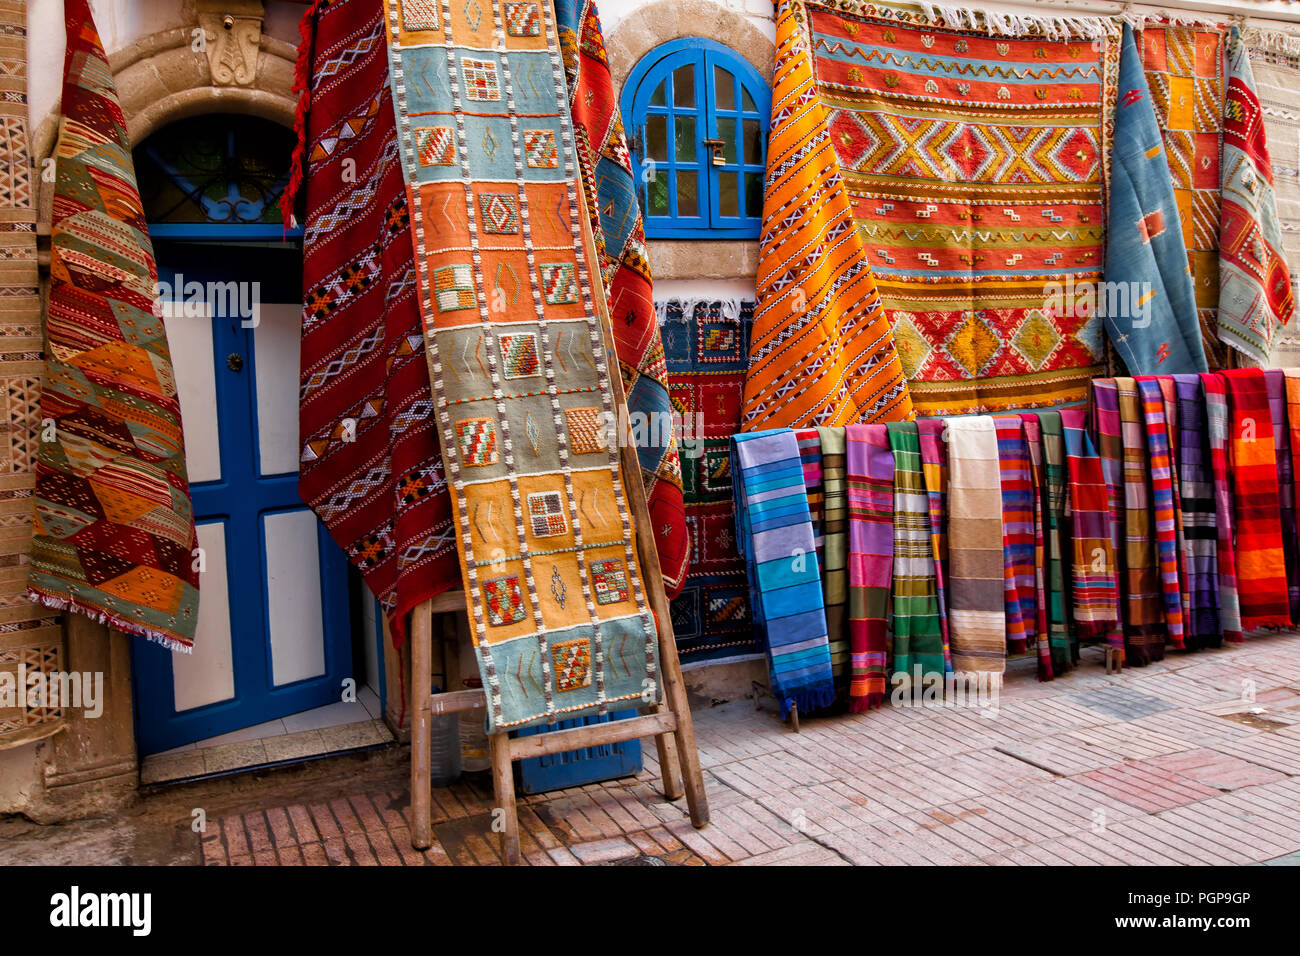 Marokkanische Shop mit bunten Teppichen und Teppichen auf Anzeige außen hängen an den Wänden. Ort: Essaouira, Marokko Stockfoto